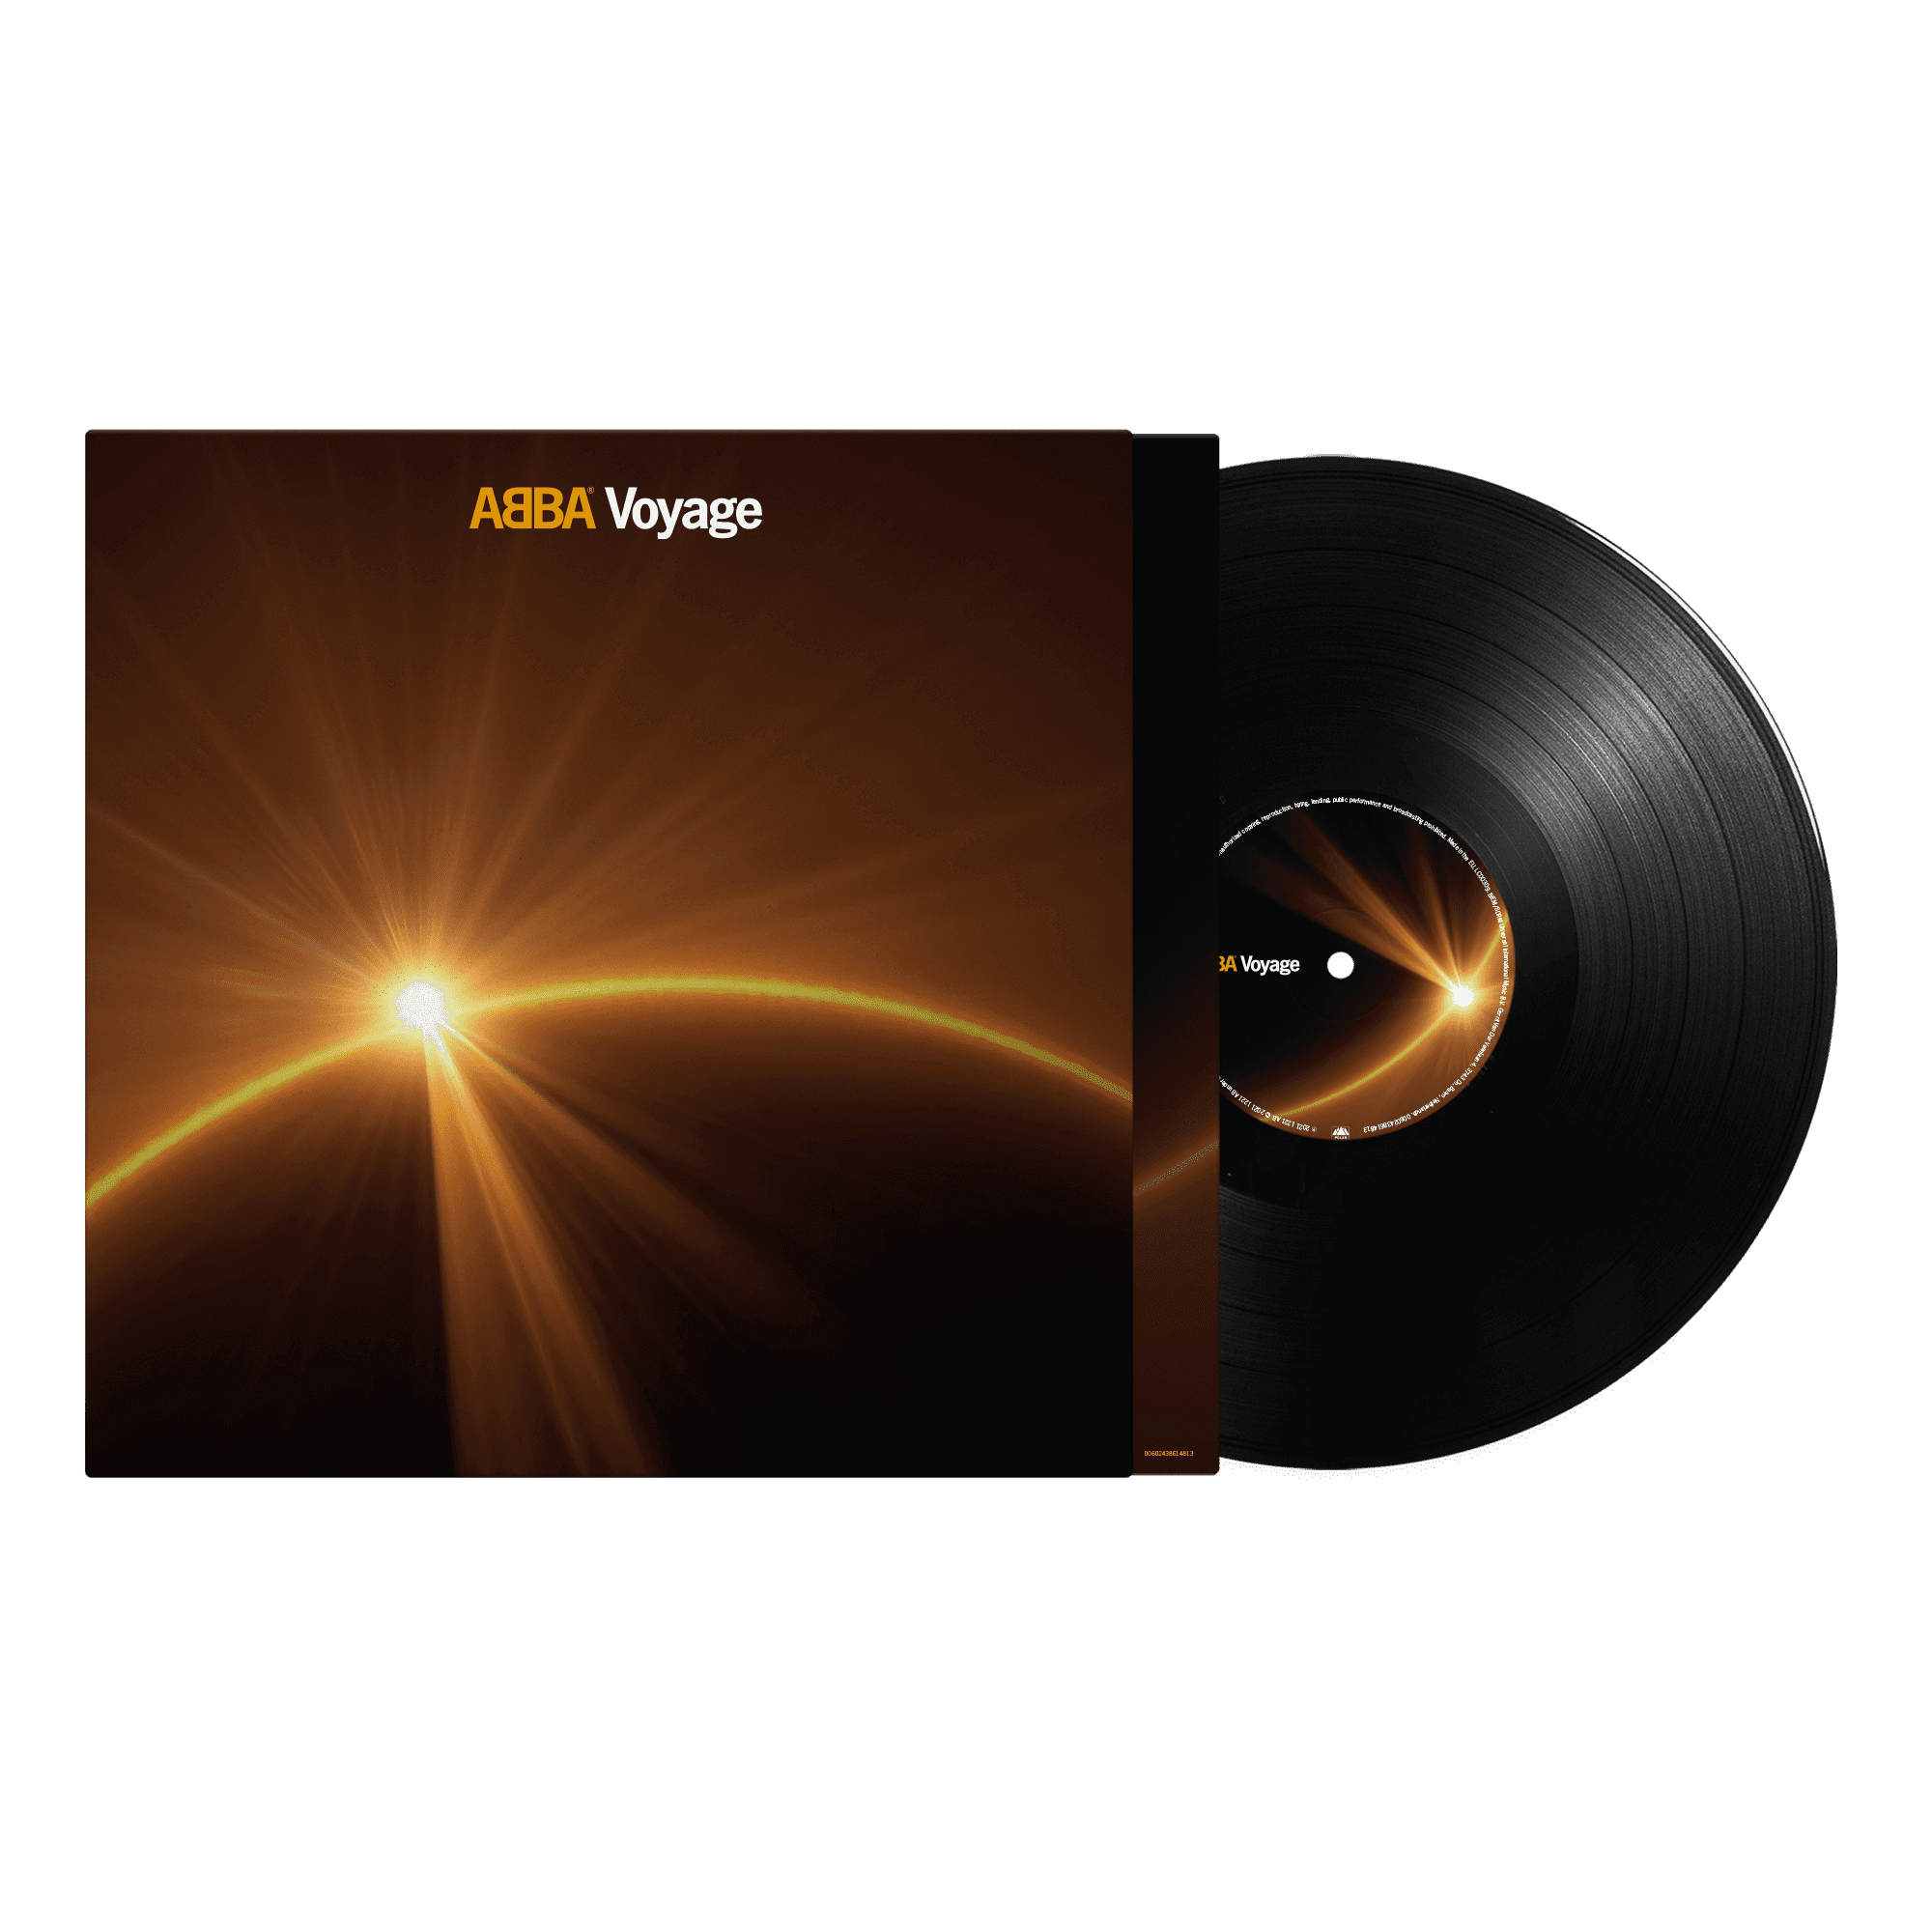 https://images.bravado.de/prod/product-assets/product-asset-data/abba/abba/products/138729/web/28606/image-thumb__28606__3000x3000_original/ABBA-Voyage-Standard-Black-Vinyl-Vinyl-Album-138729-28606.bfb93a0c.png